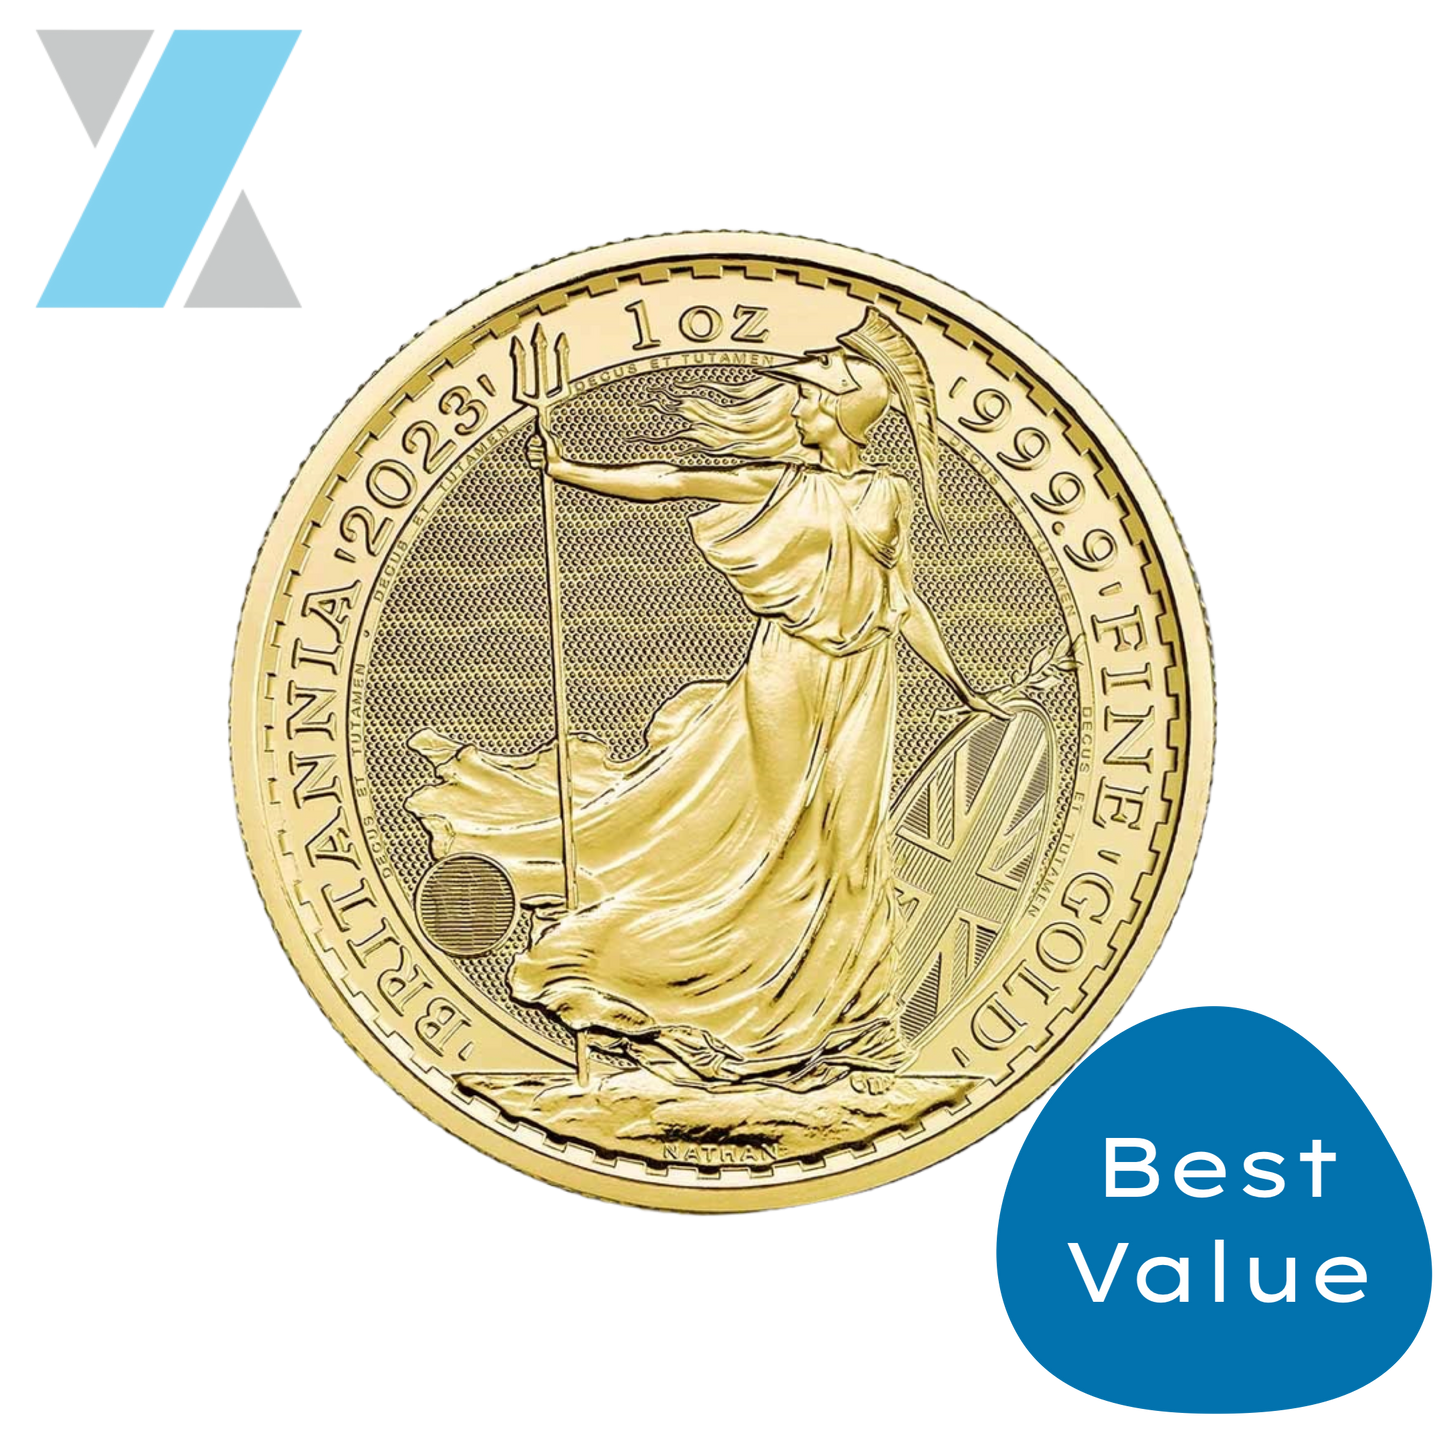 Best Value 1oz Gold British coin